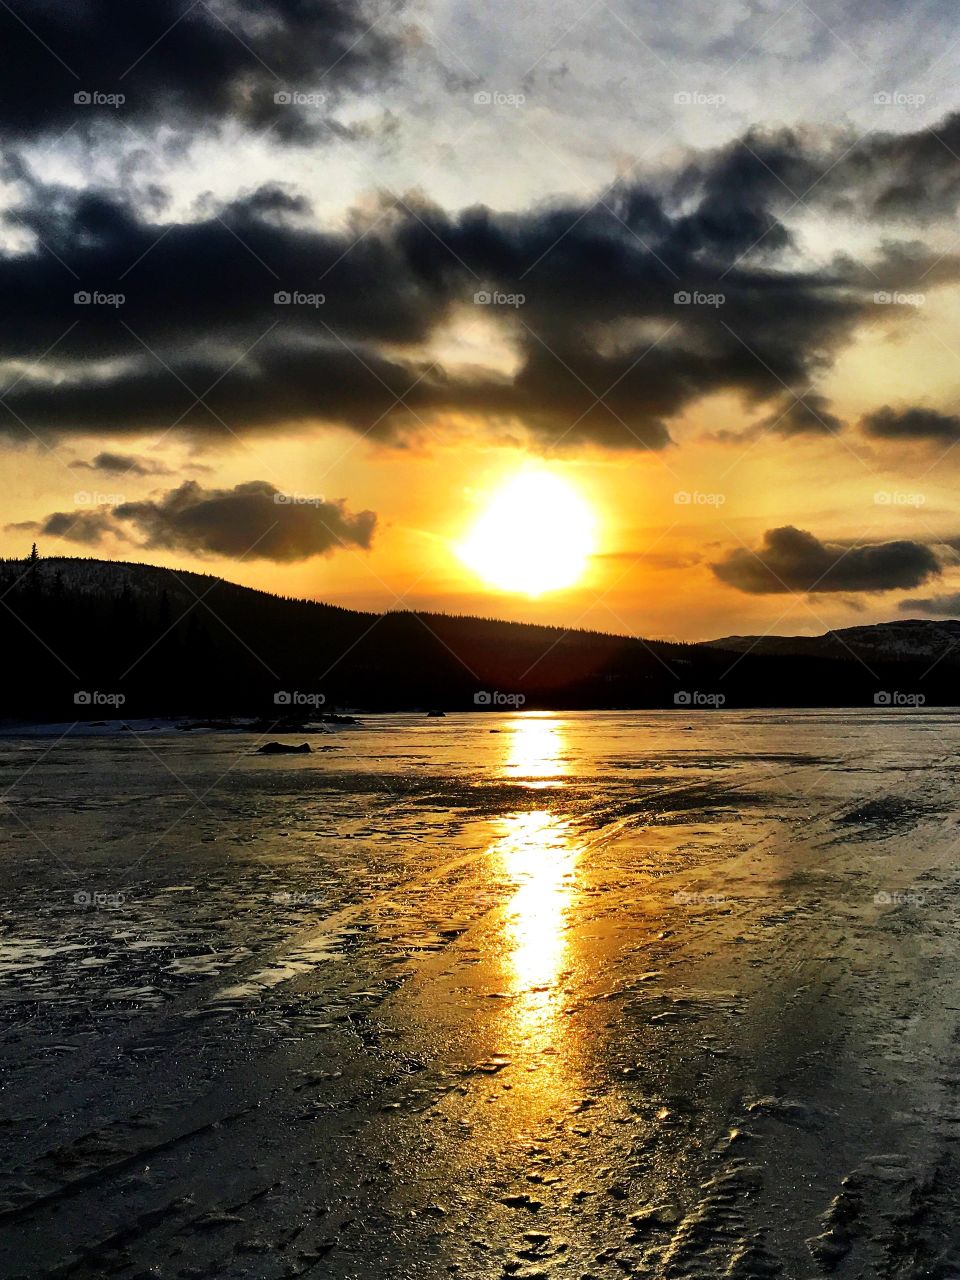 Sunset on icy lake 